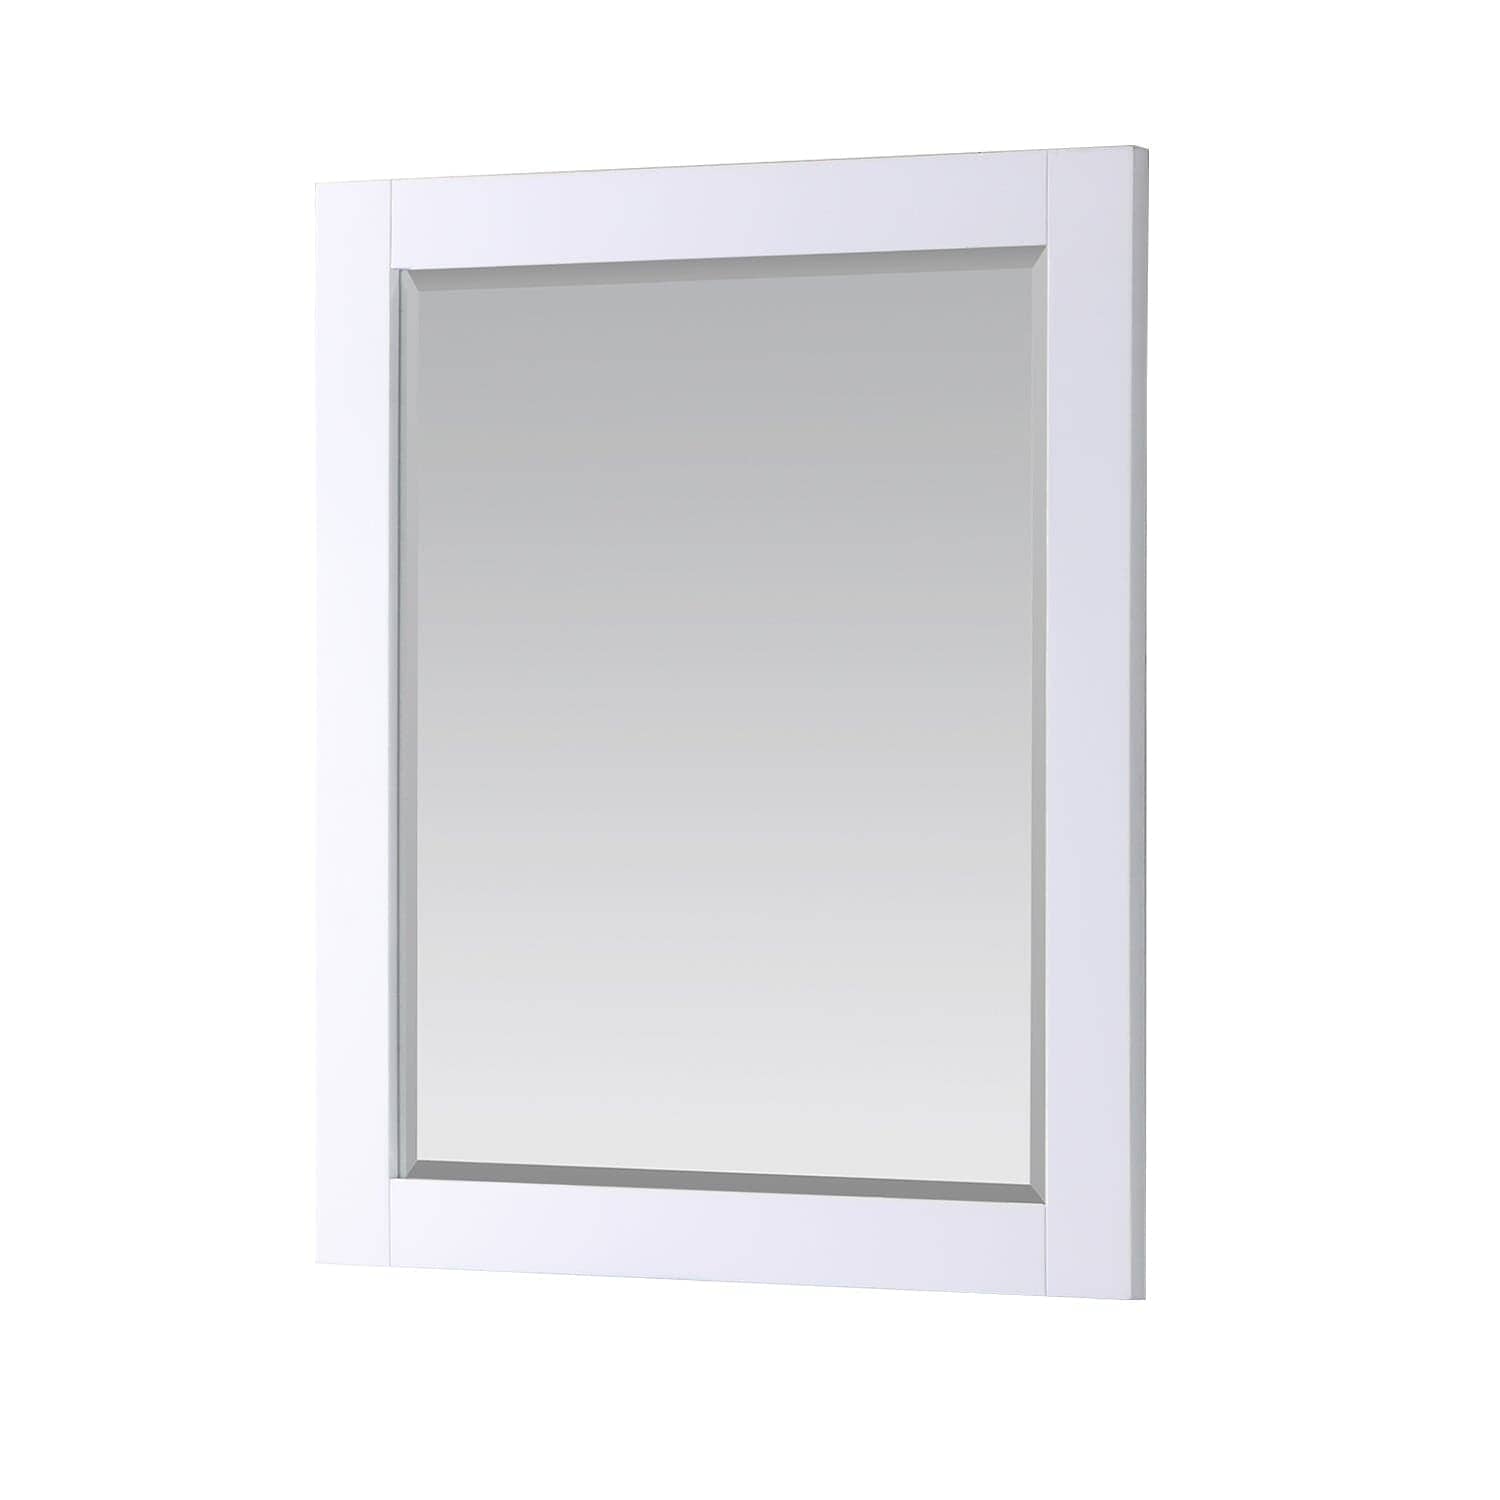 Bathroom Mirror - Altair Maribella 28W x 36H -535030-MIR-WH